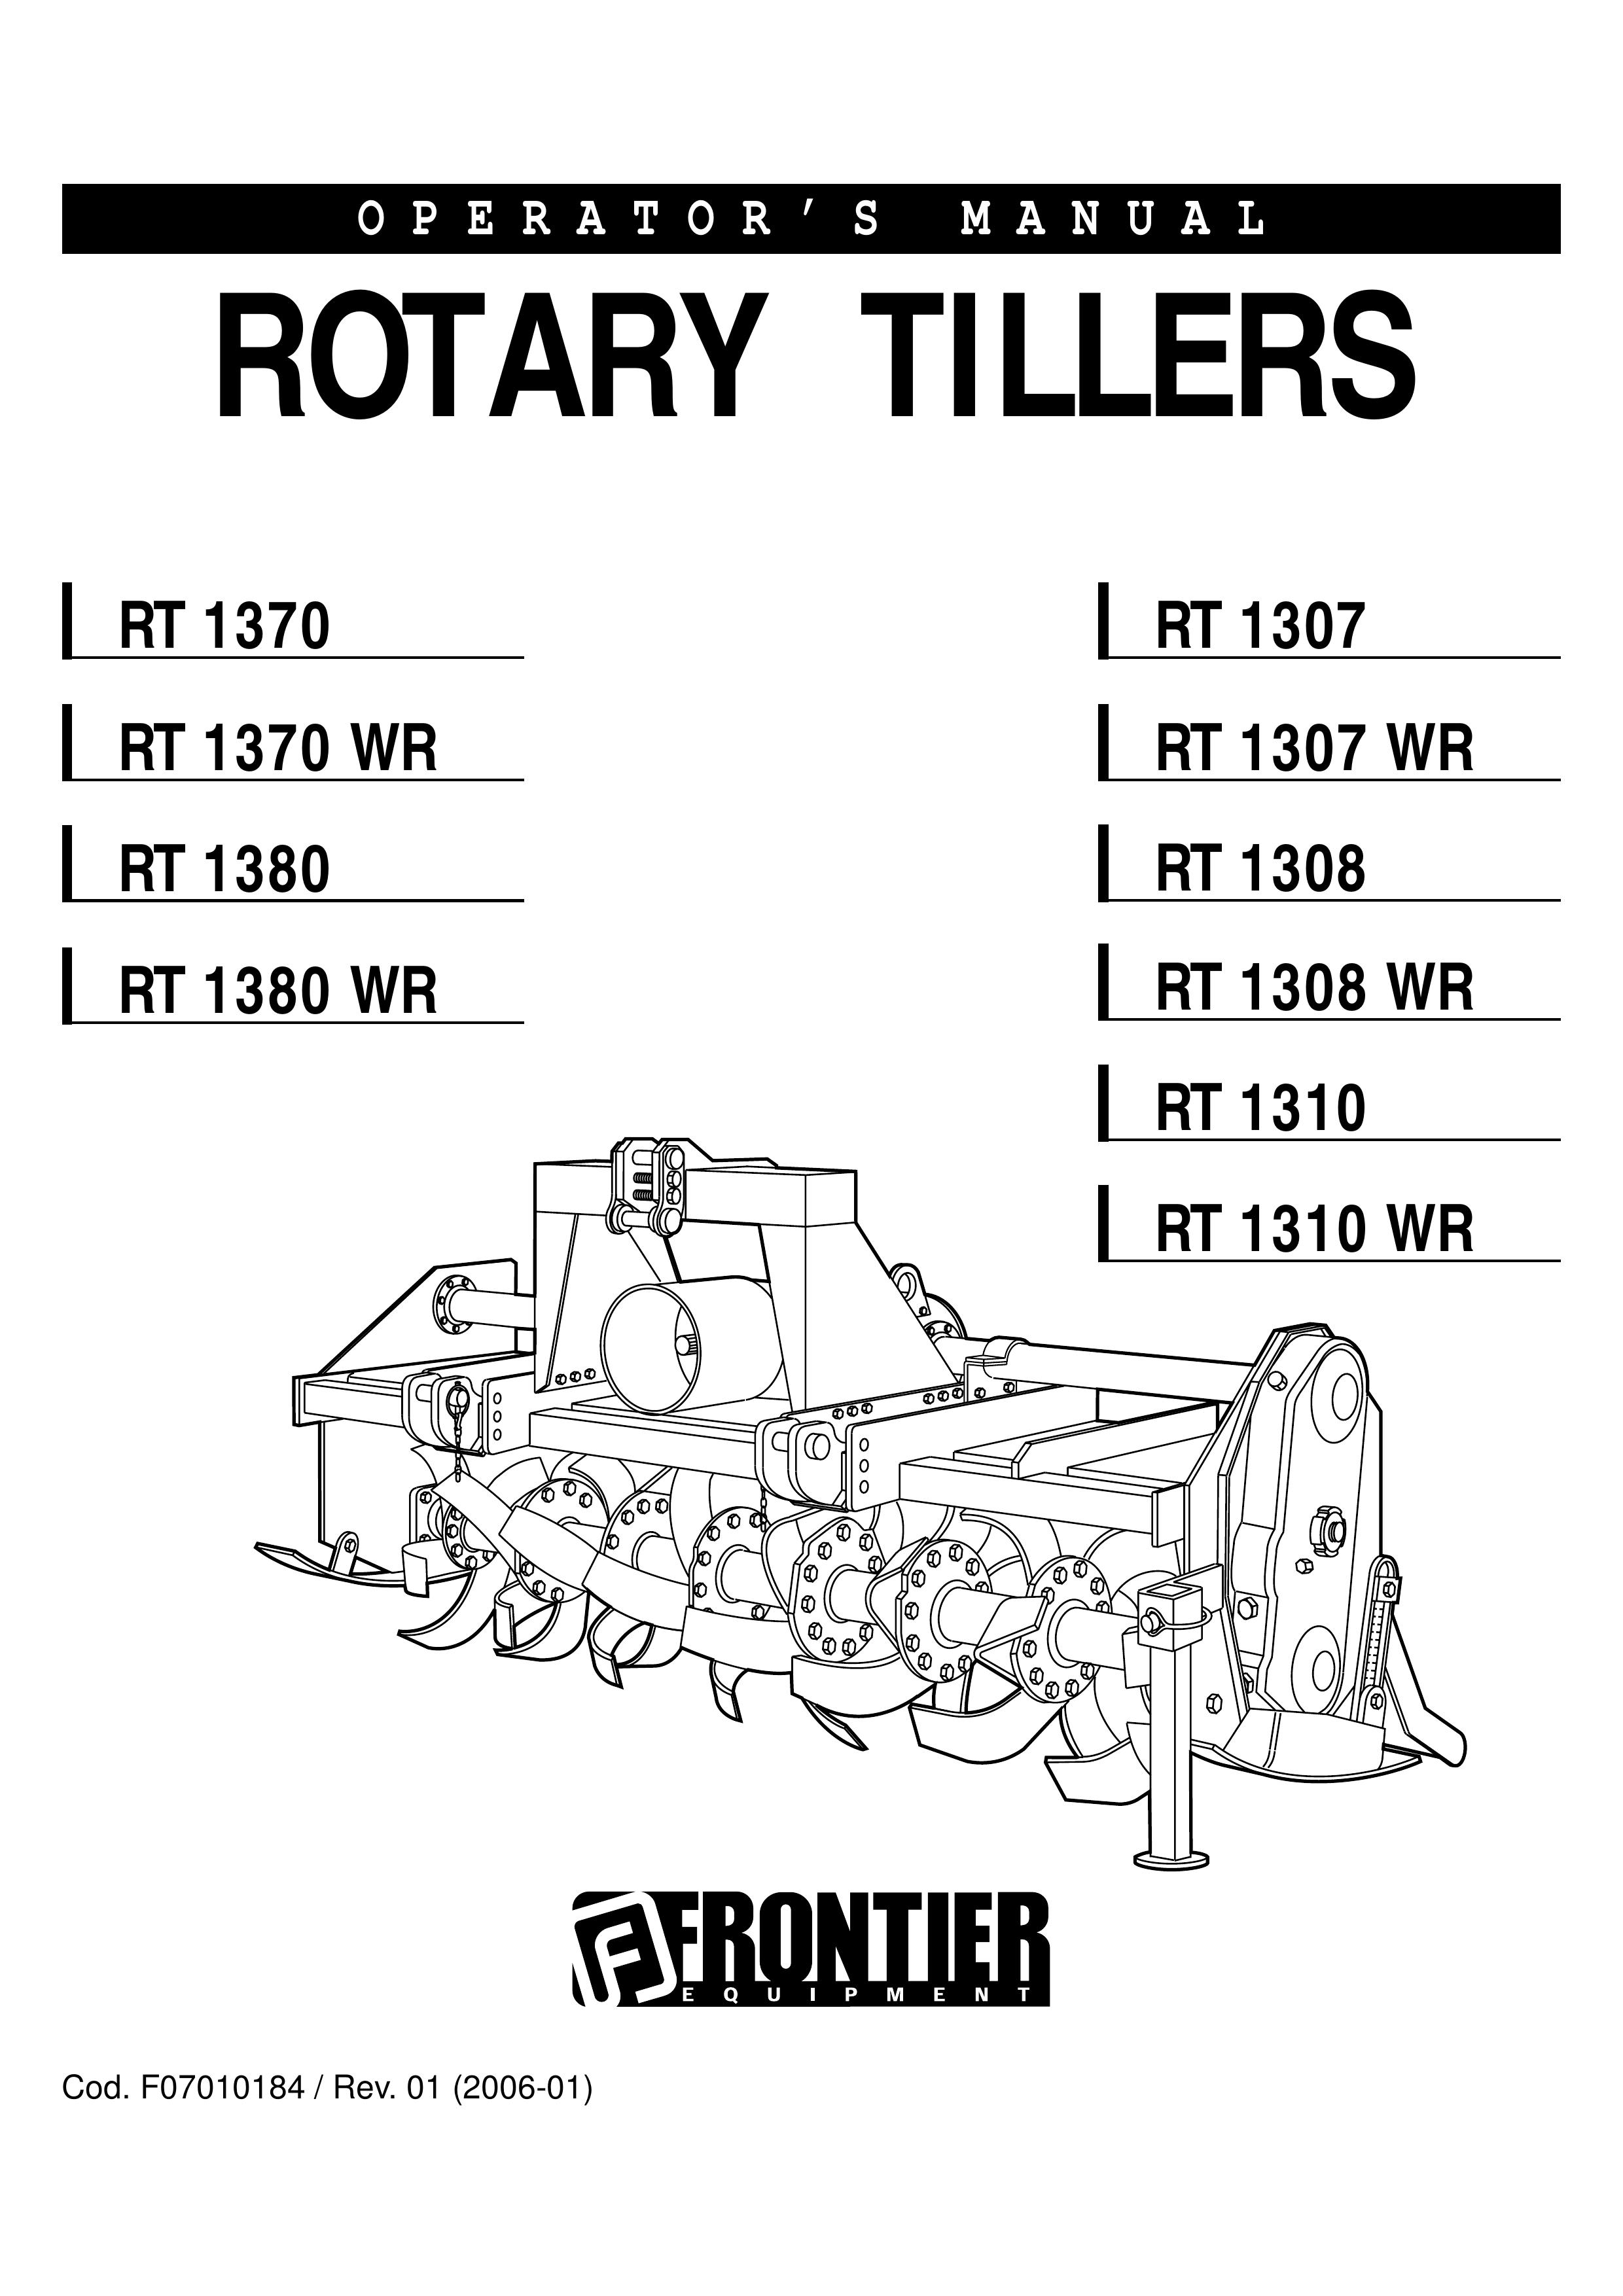 John Deere RT 1308 Tiller User Manual